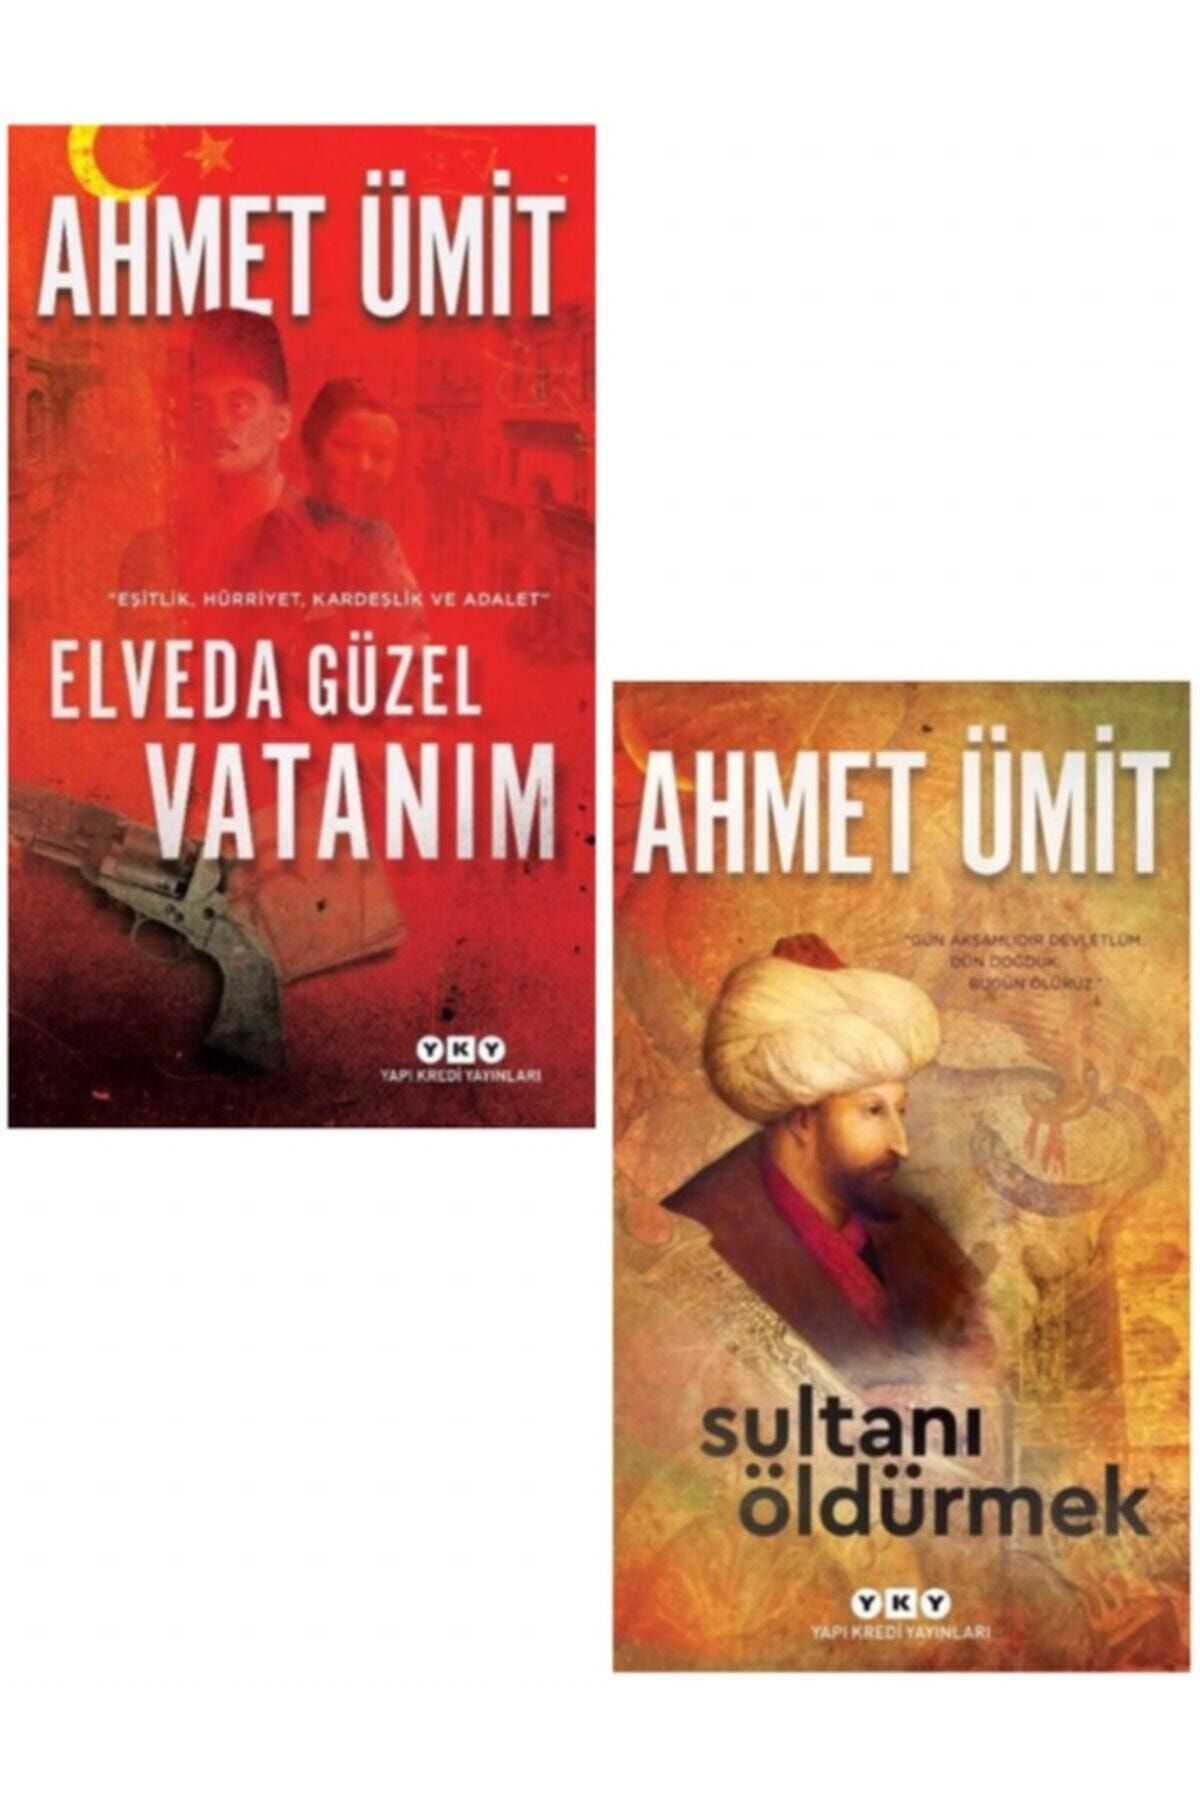 Yapı Kredi Yayınları Elveda Güzel Vatanım - Sultanı Öldürmek, Ahmet Ümit 2 Kitap, Duru Kalem Hediye.